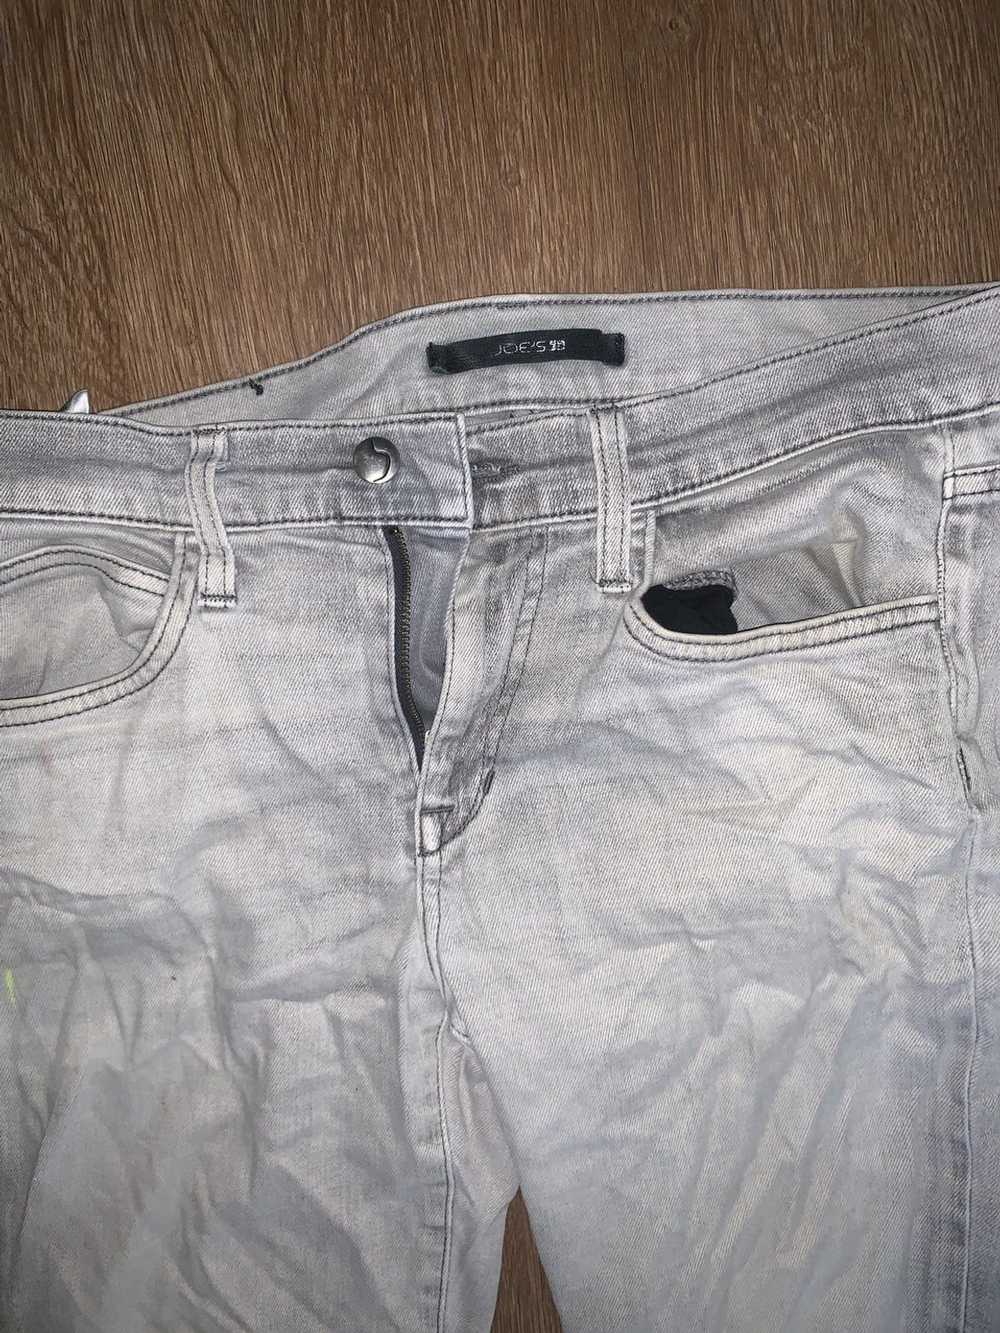 Joes × Vintage Casual slim fit joe jeans - image 2